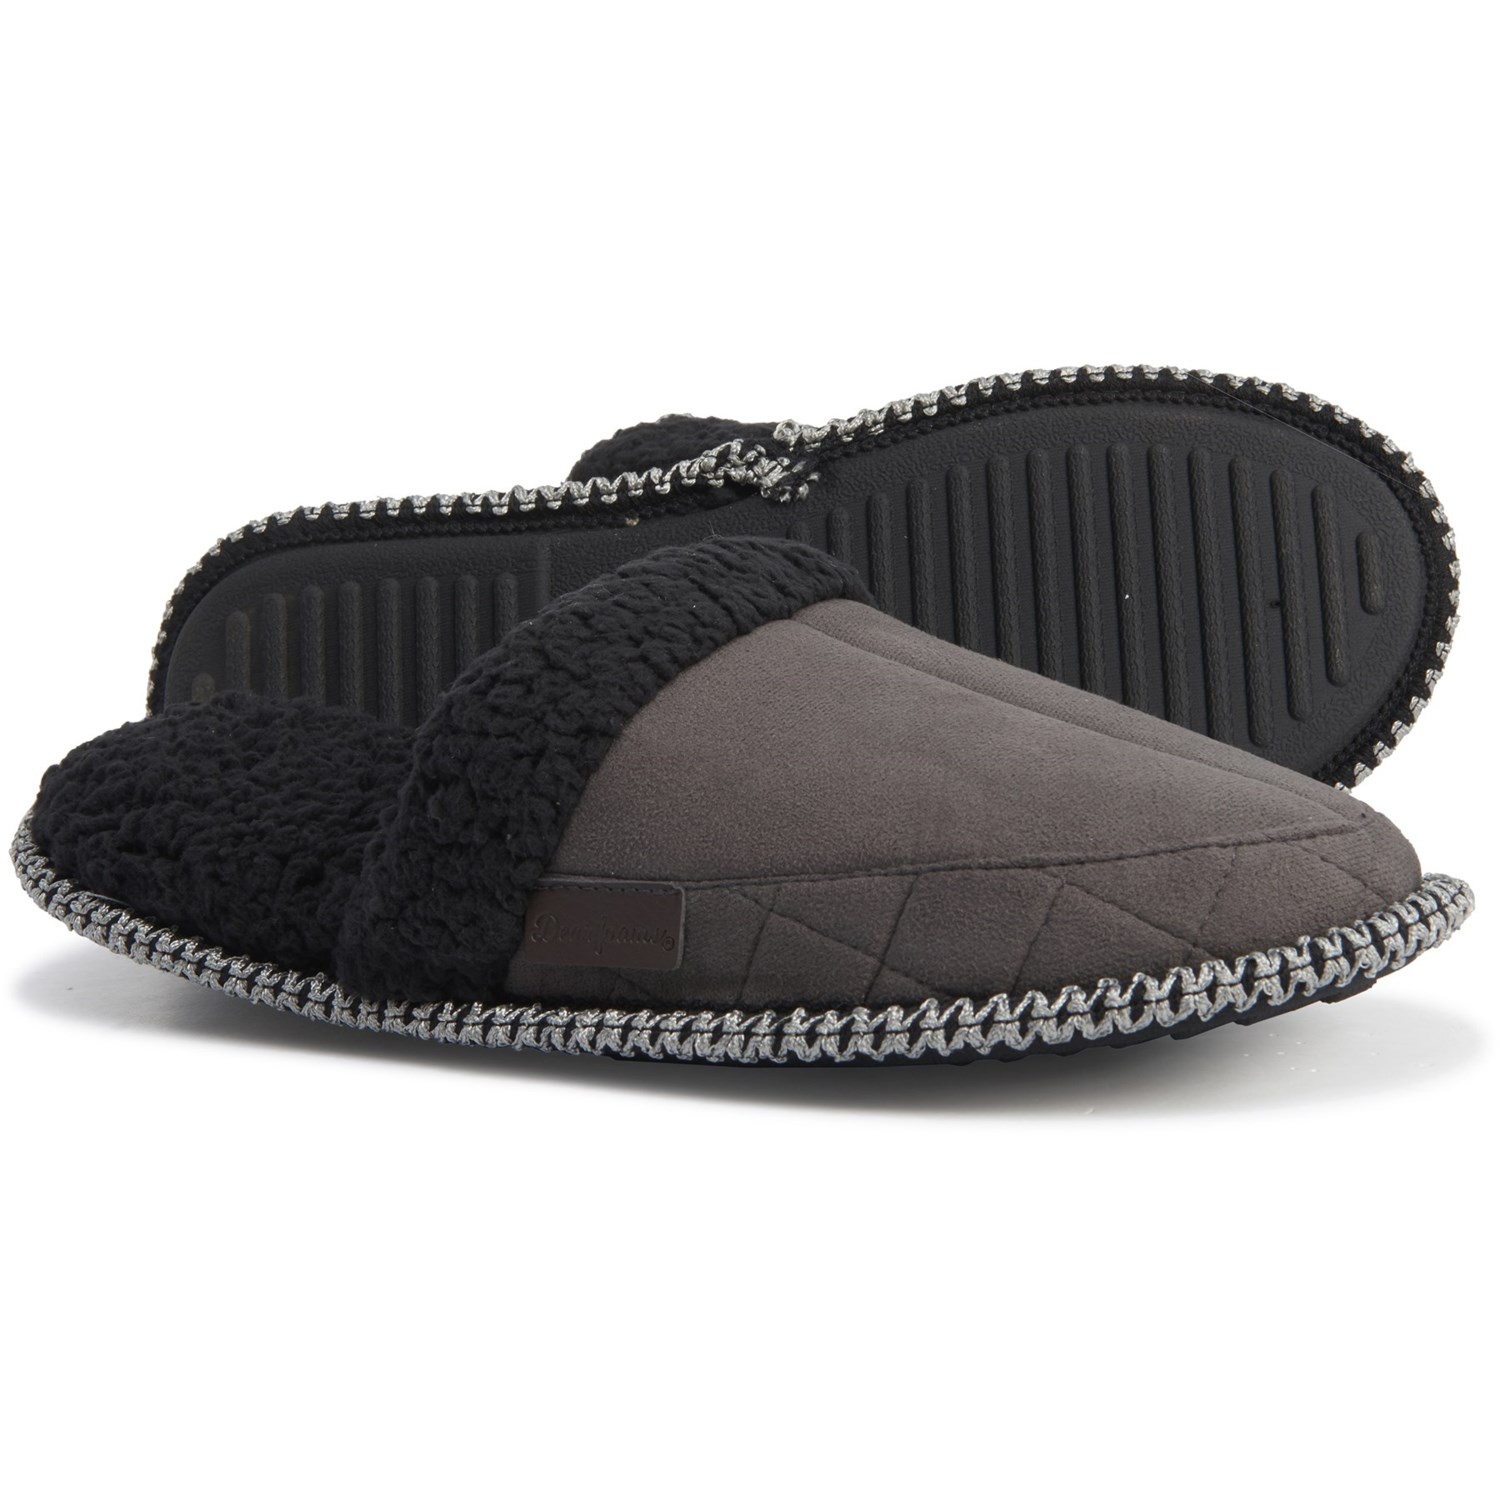 dearfoam black slippers